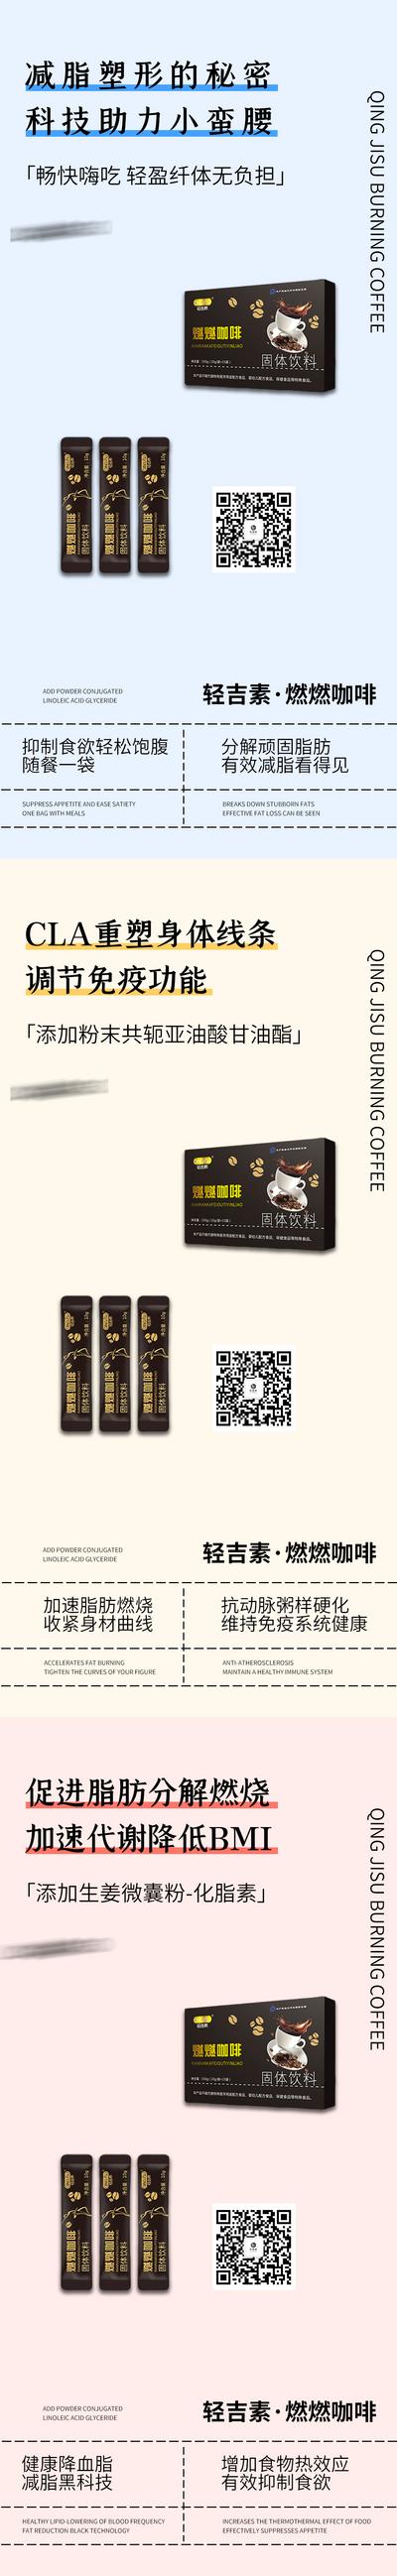 南门网 广告 海报 微商 减肥 瘦身 塑形 代餐 咖啡 新零售 产品 保健品 减脂 系列